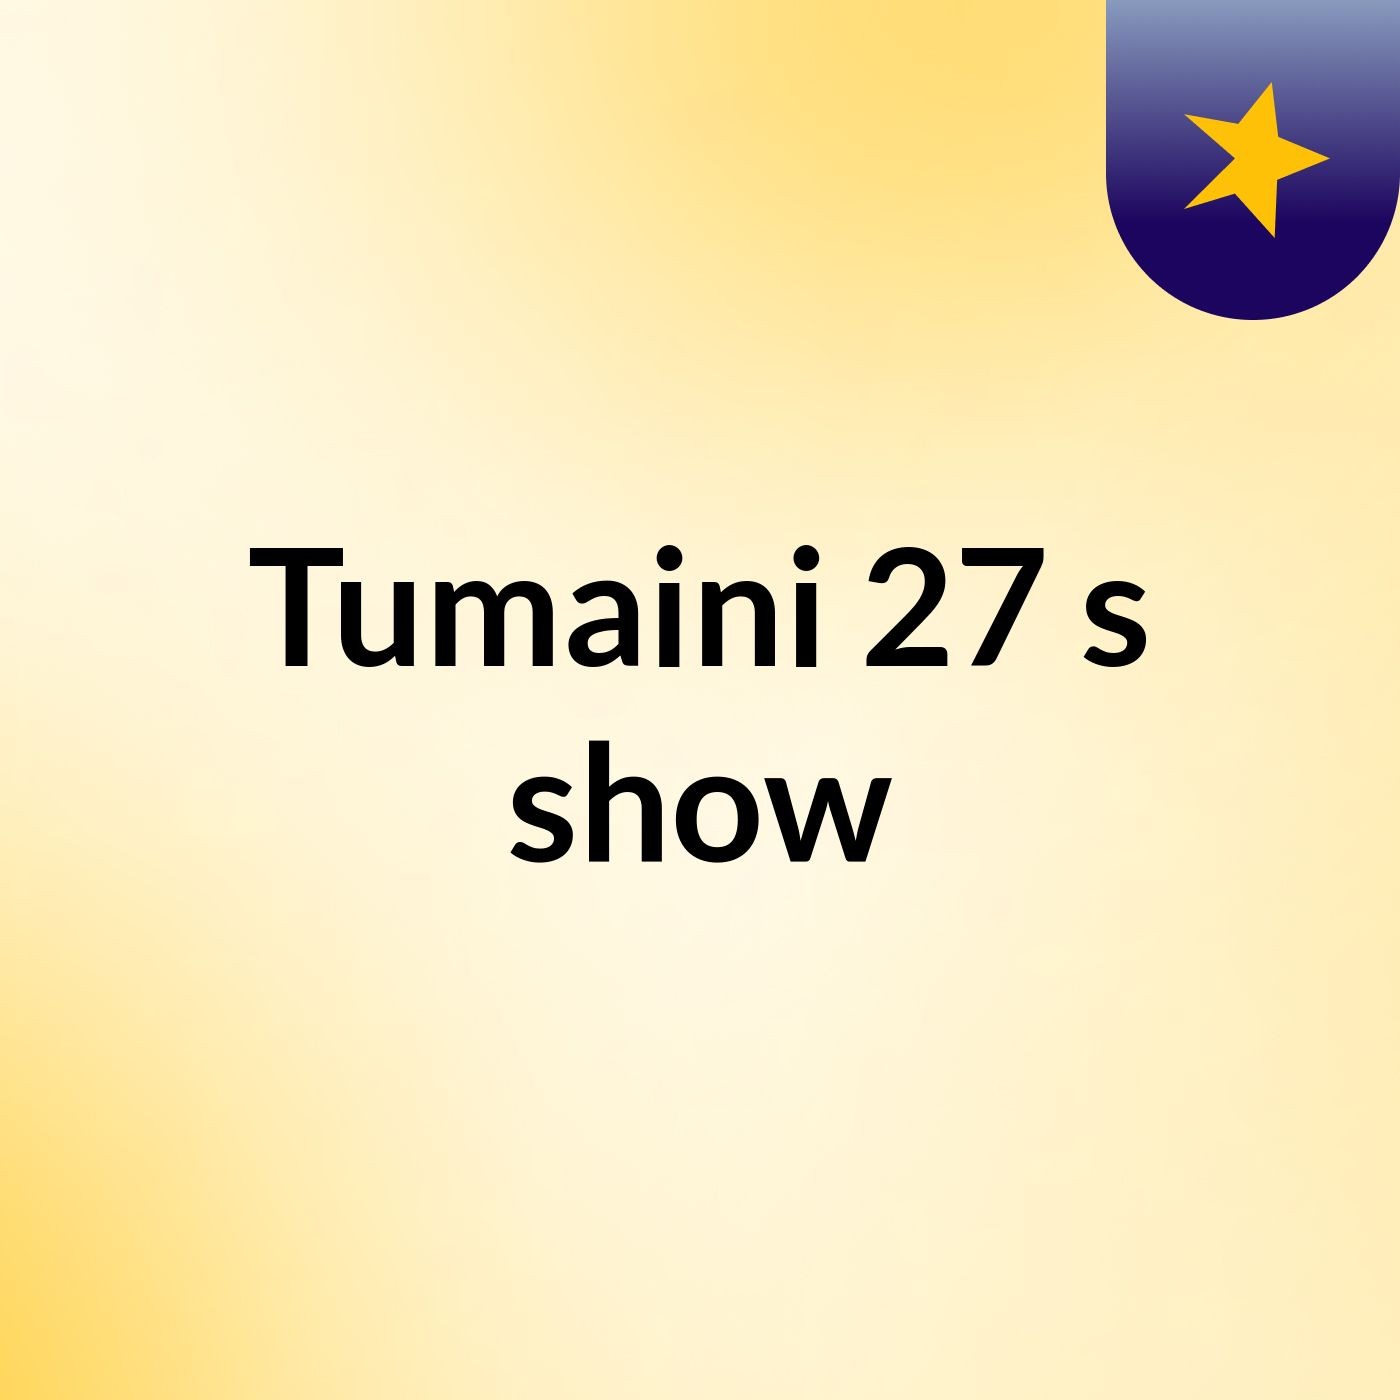 Tumaini 27's show